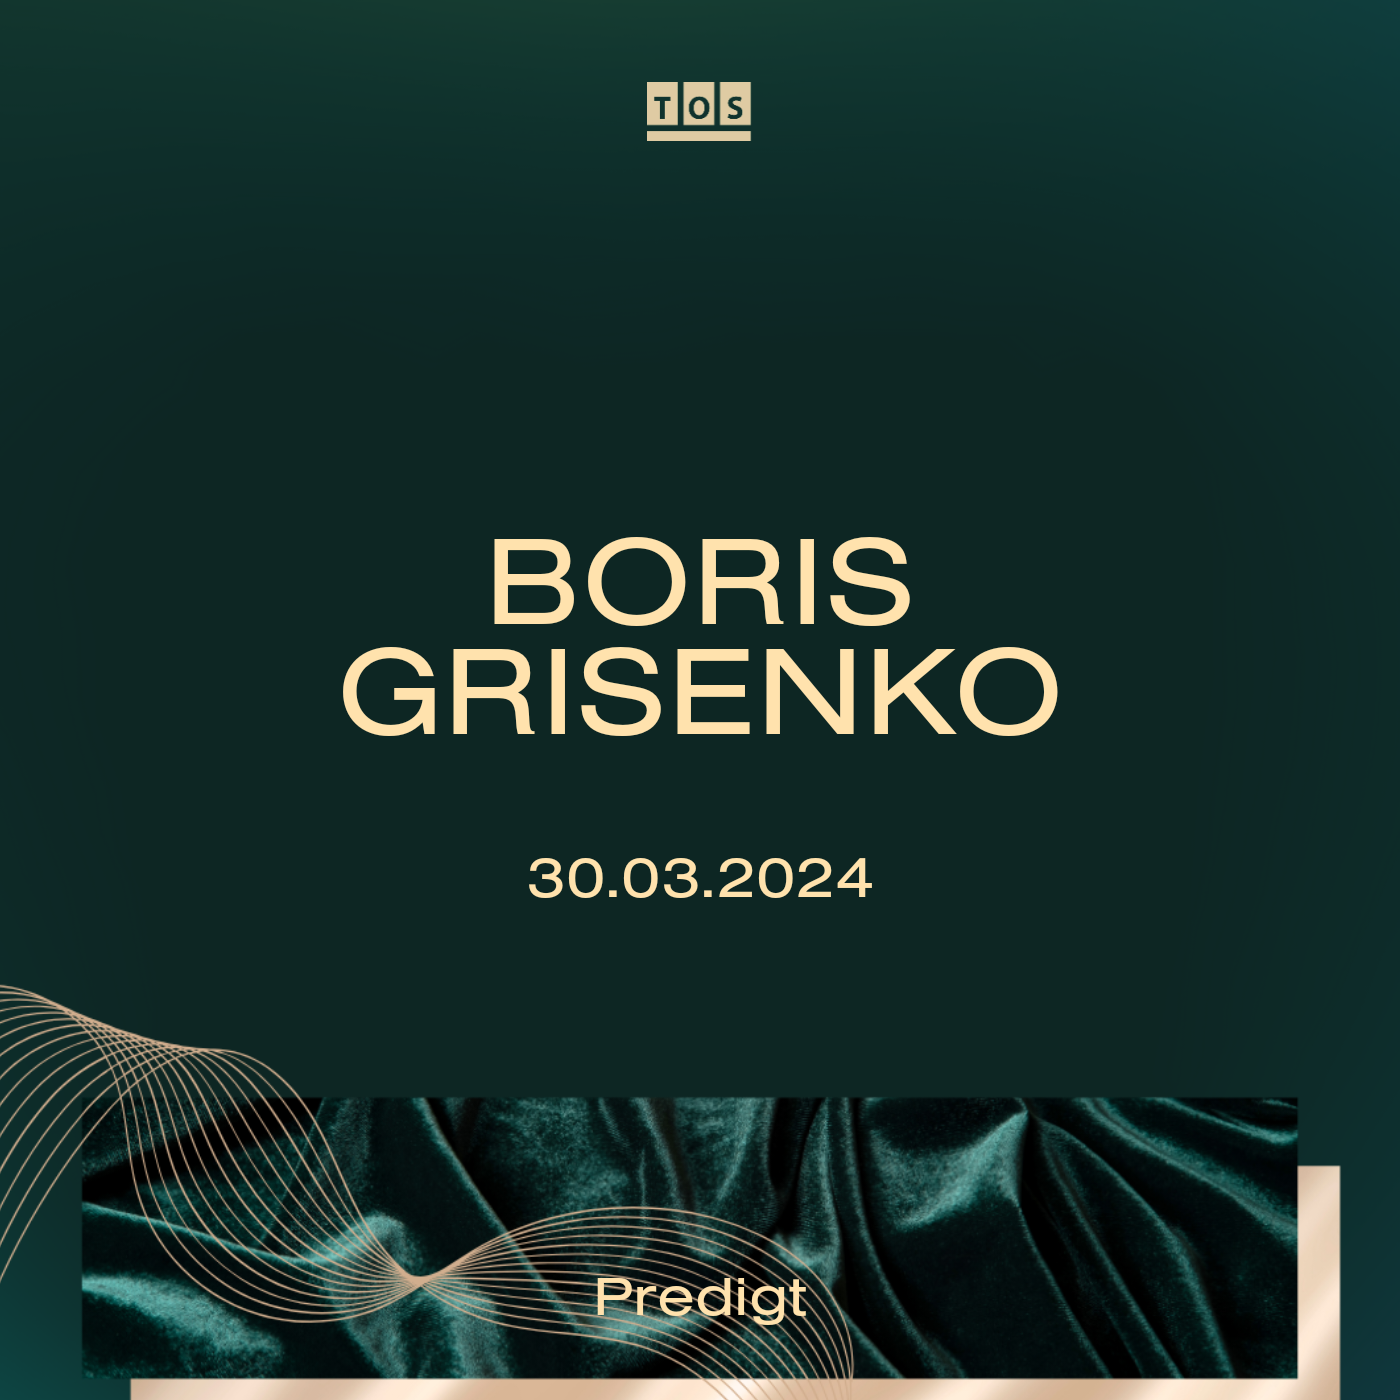 Boris Grisenko | 07.04.2024 hero artwork